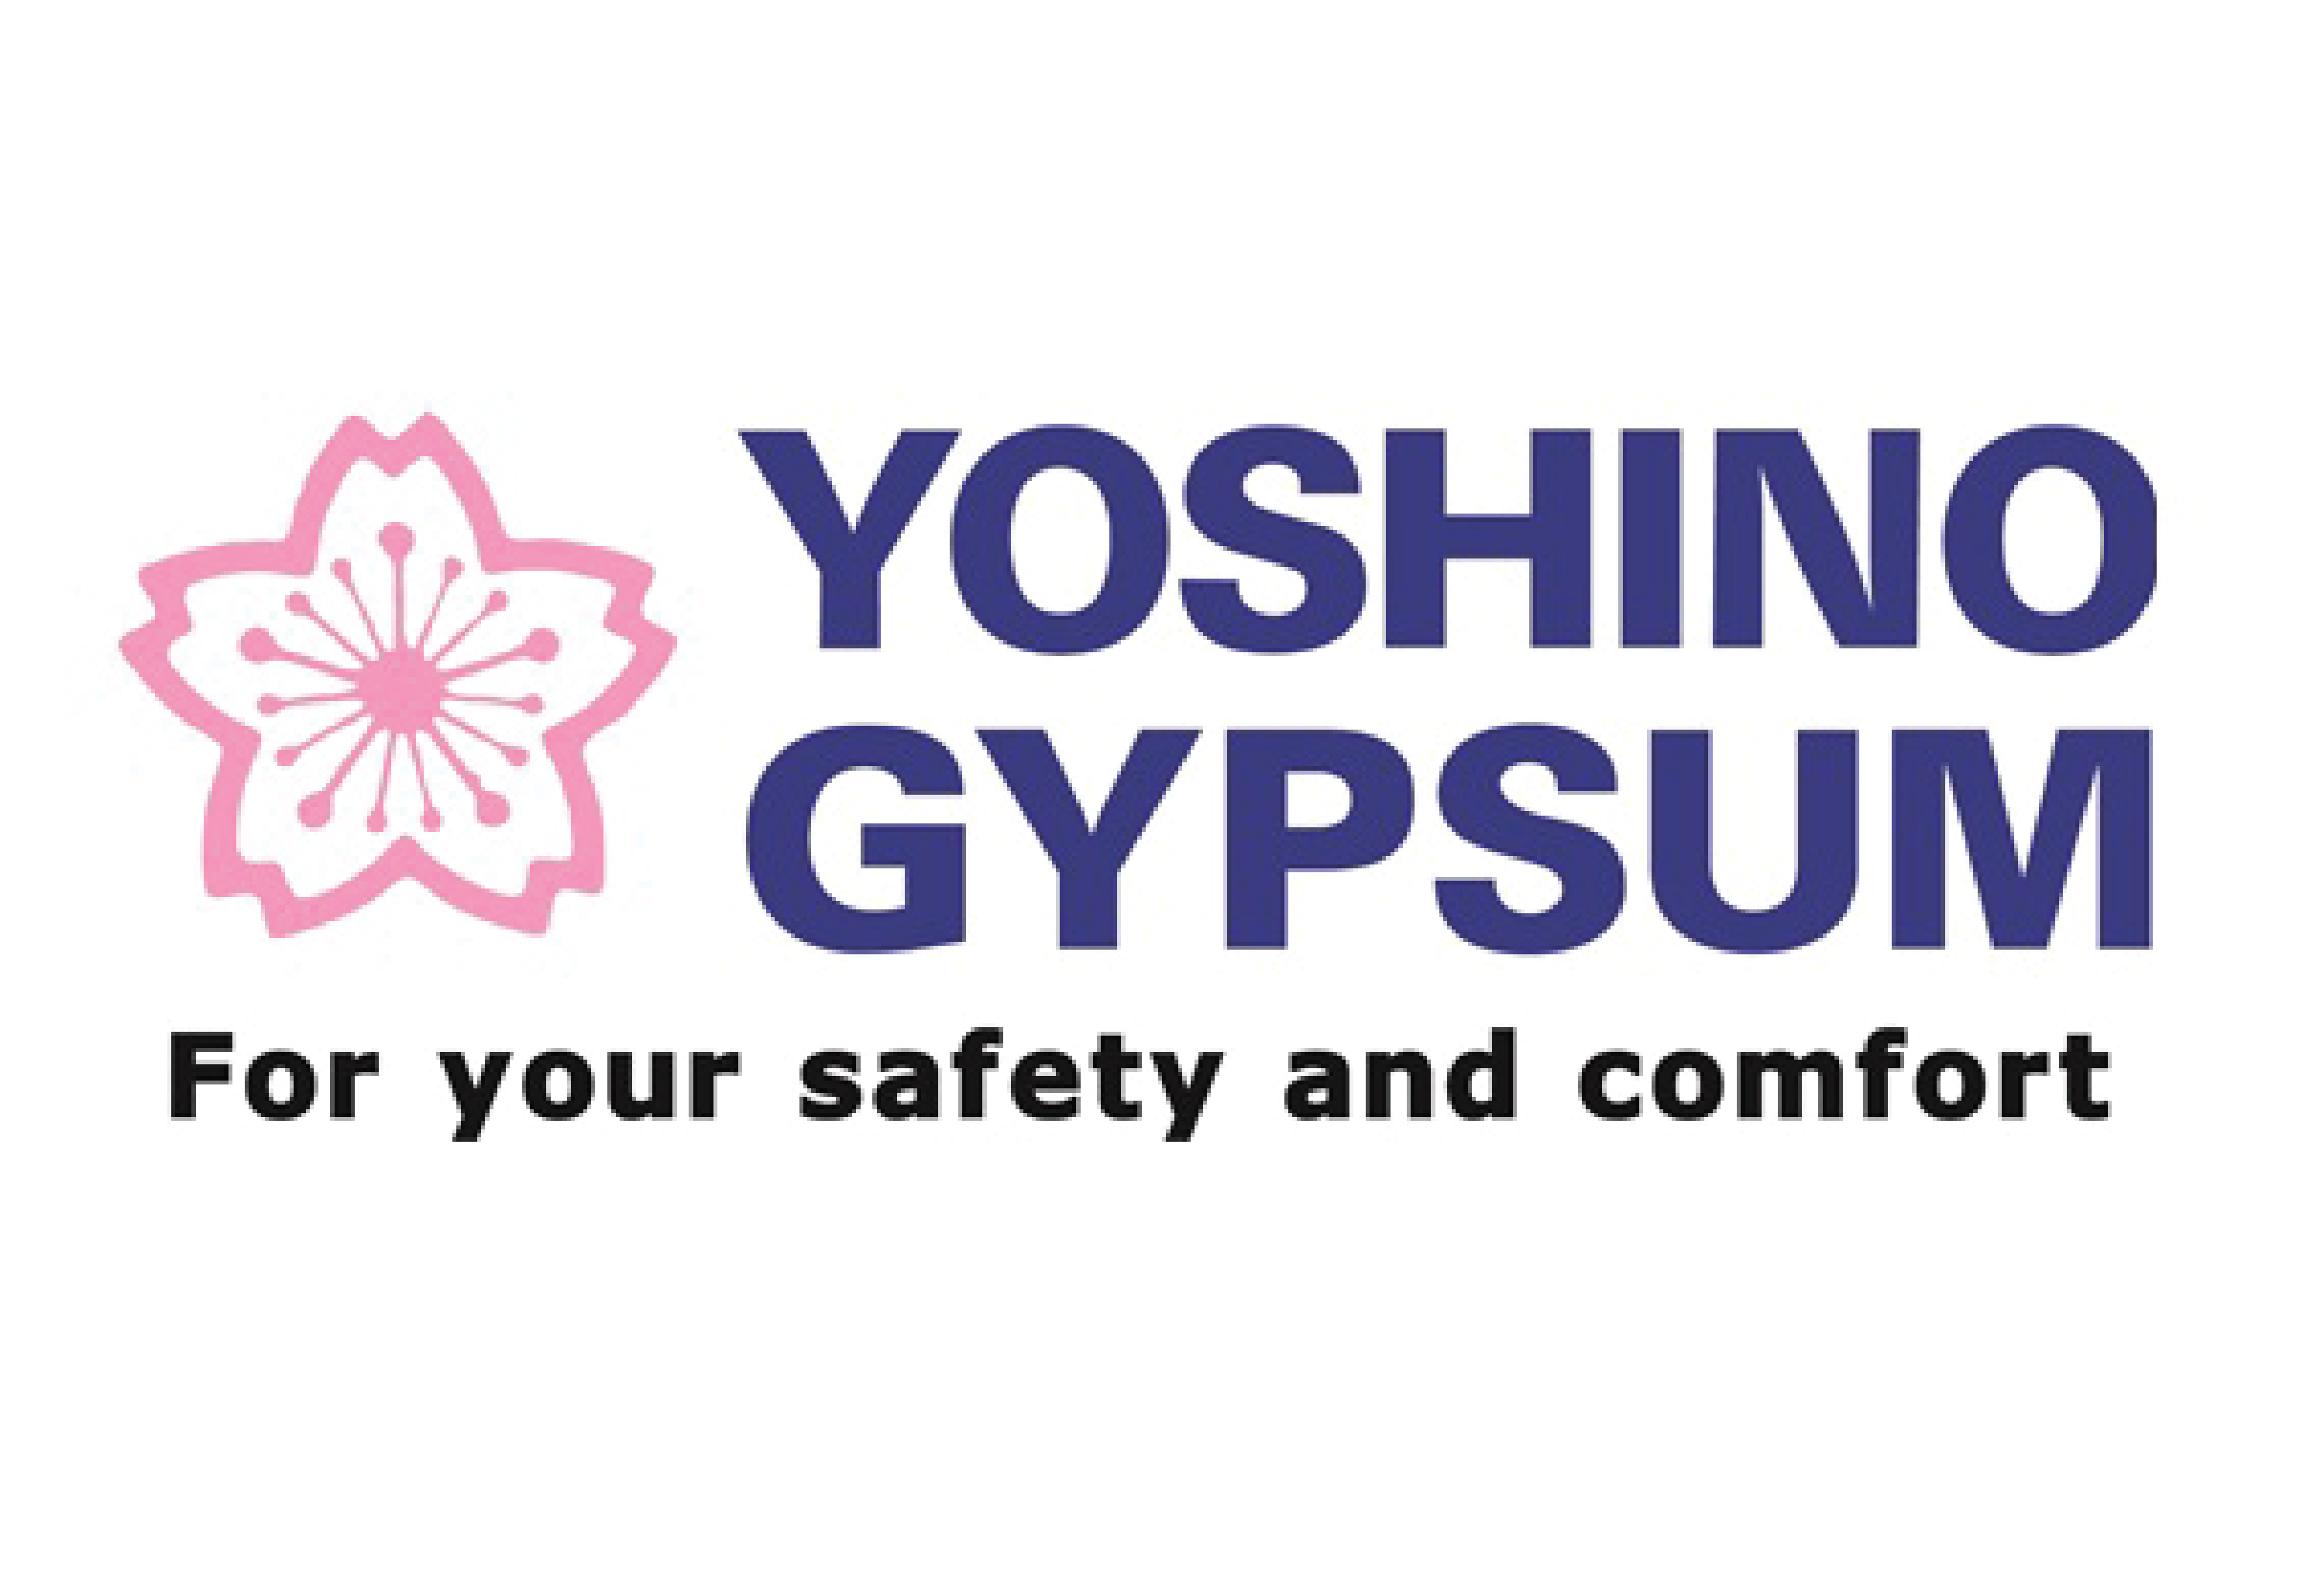 yoshino gypsum